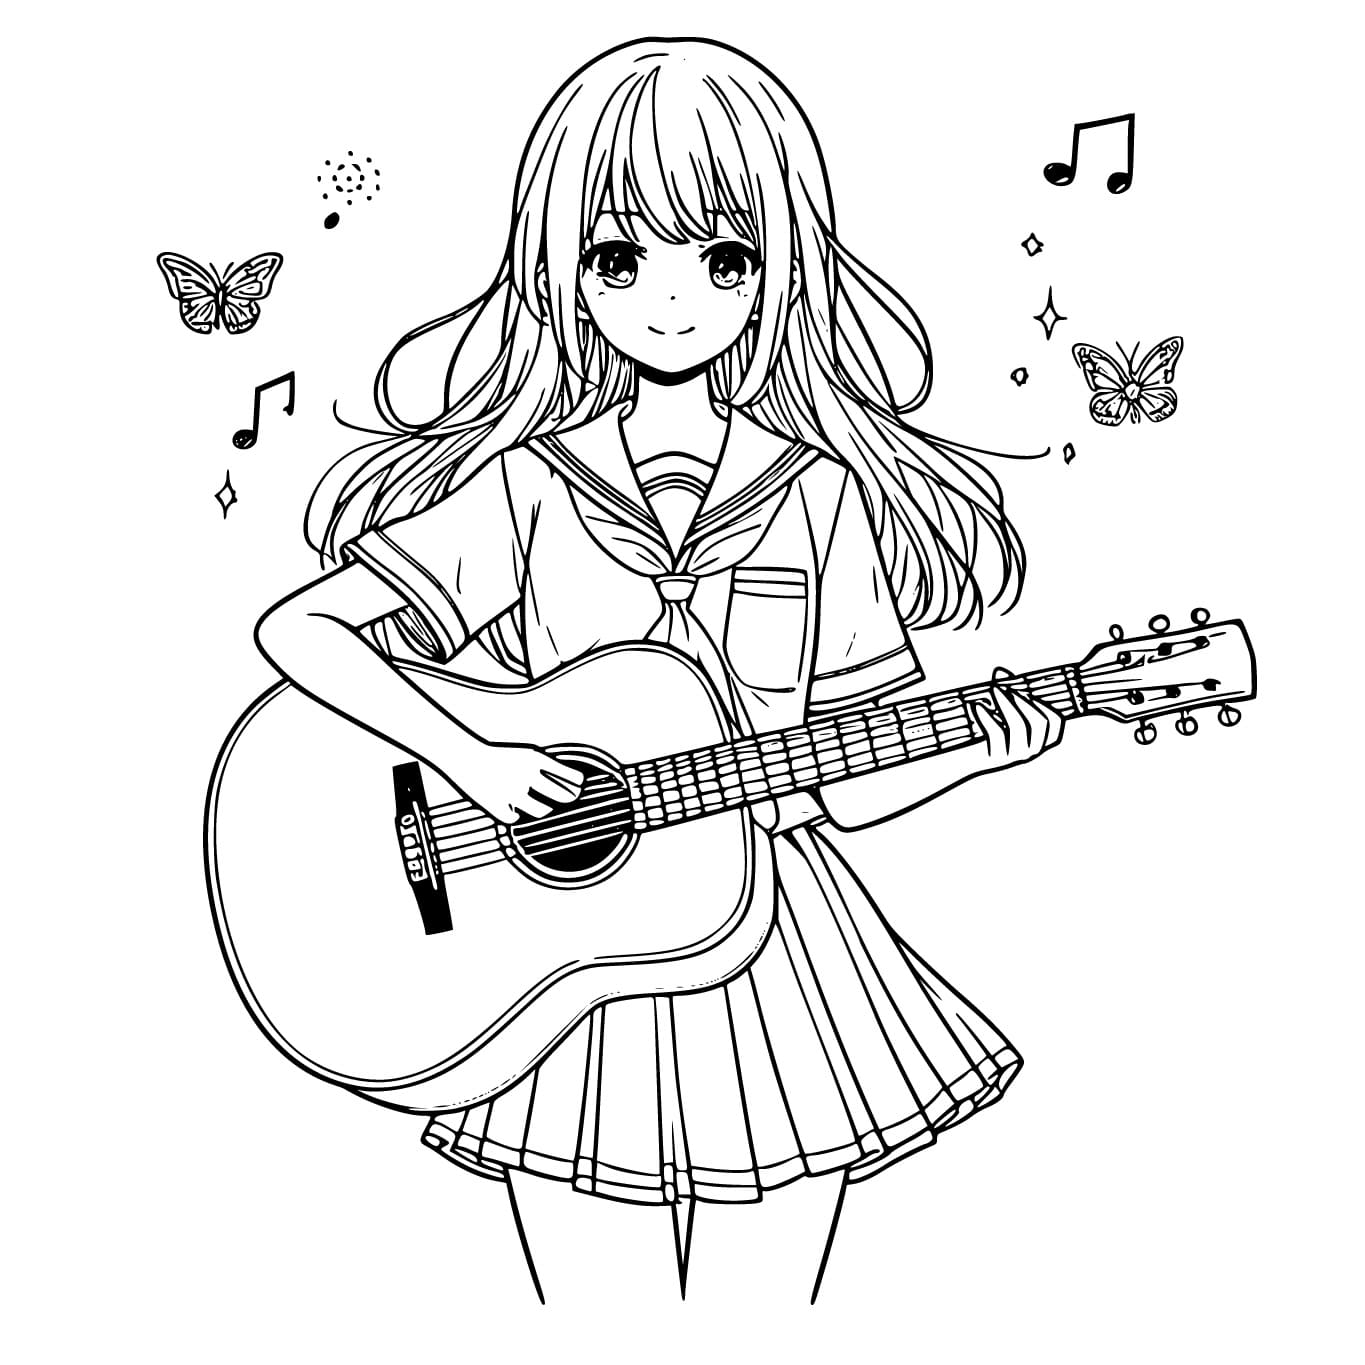 Fille Manga Joue de la Guitare coloring page